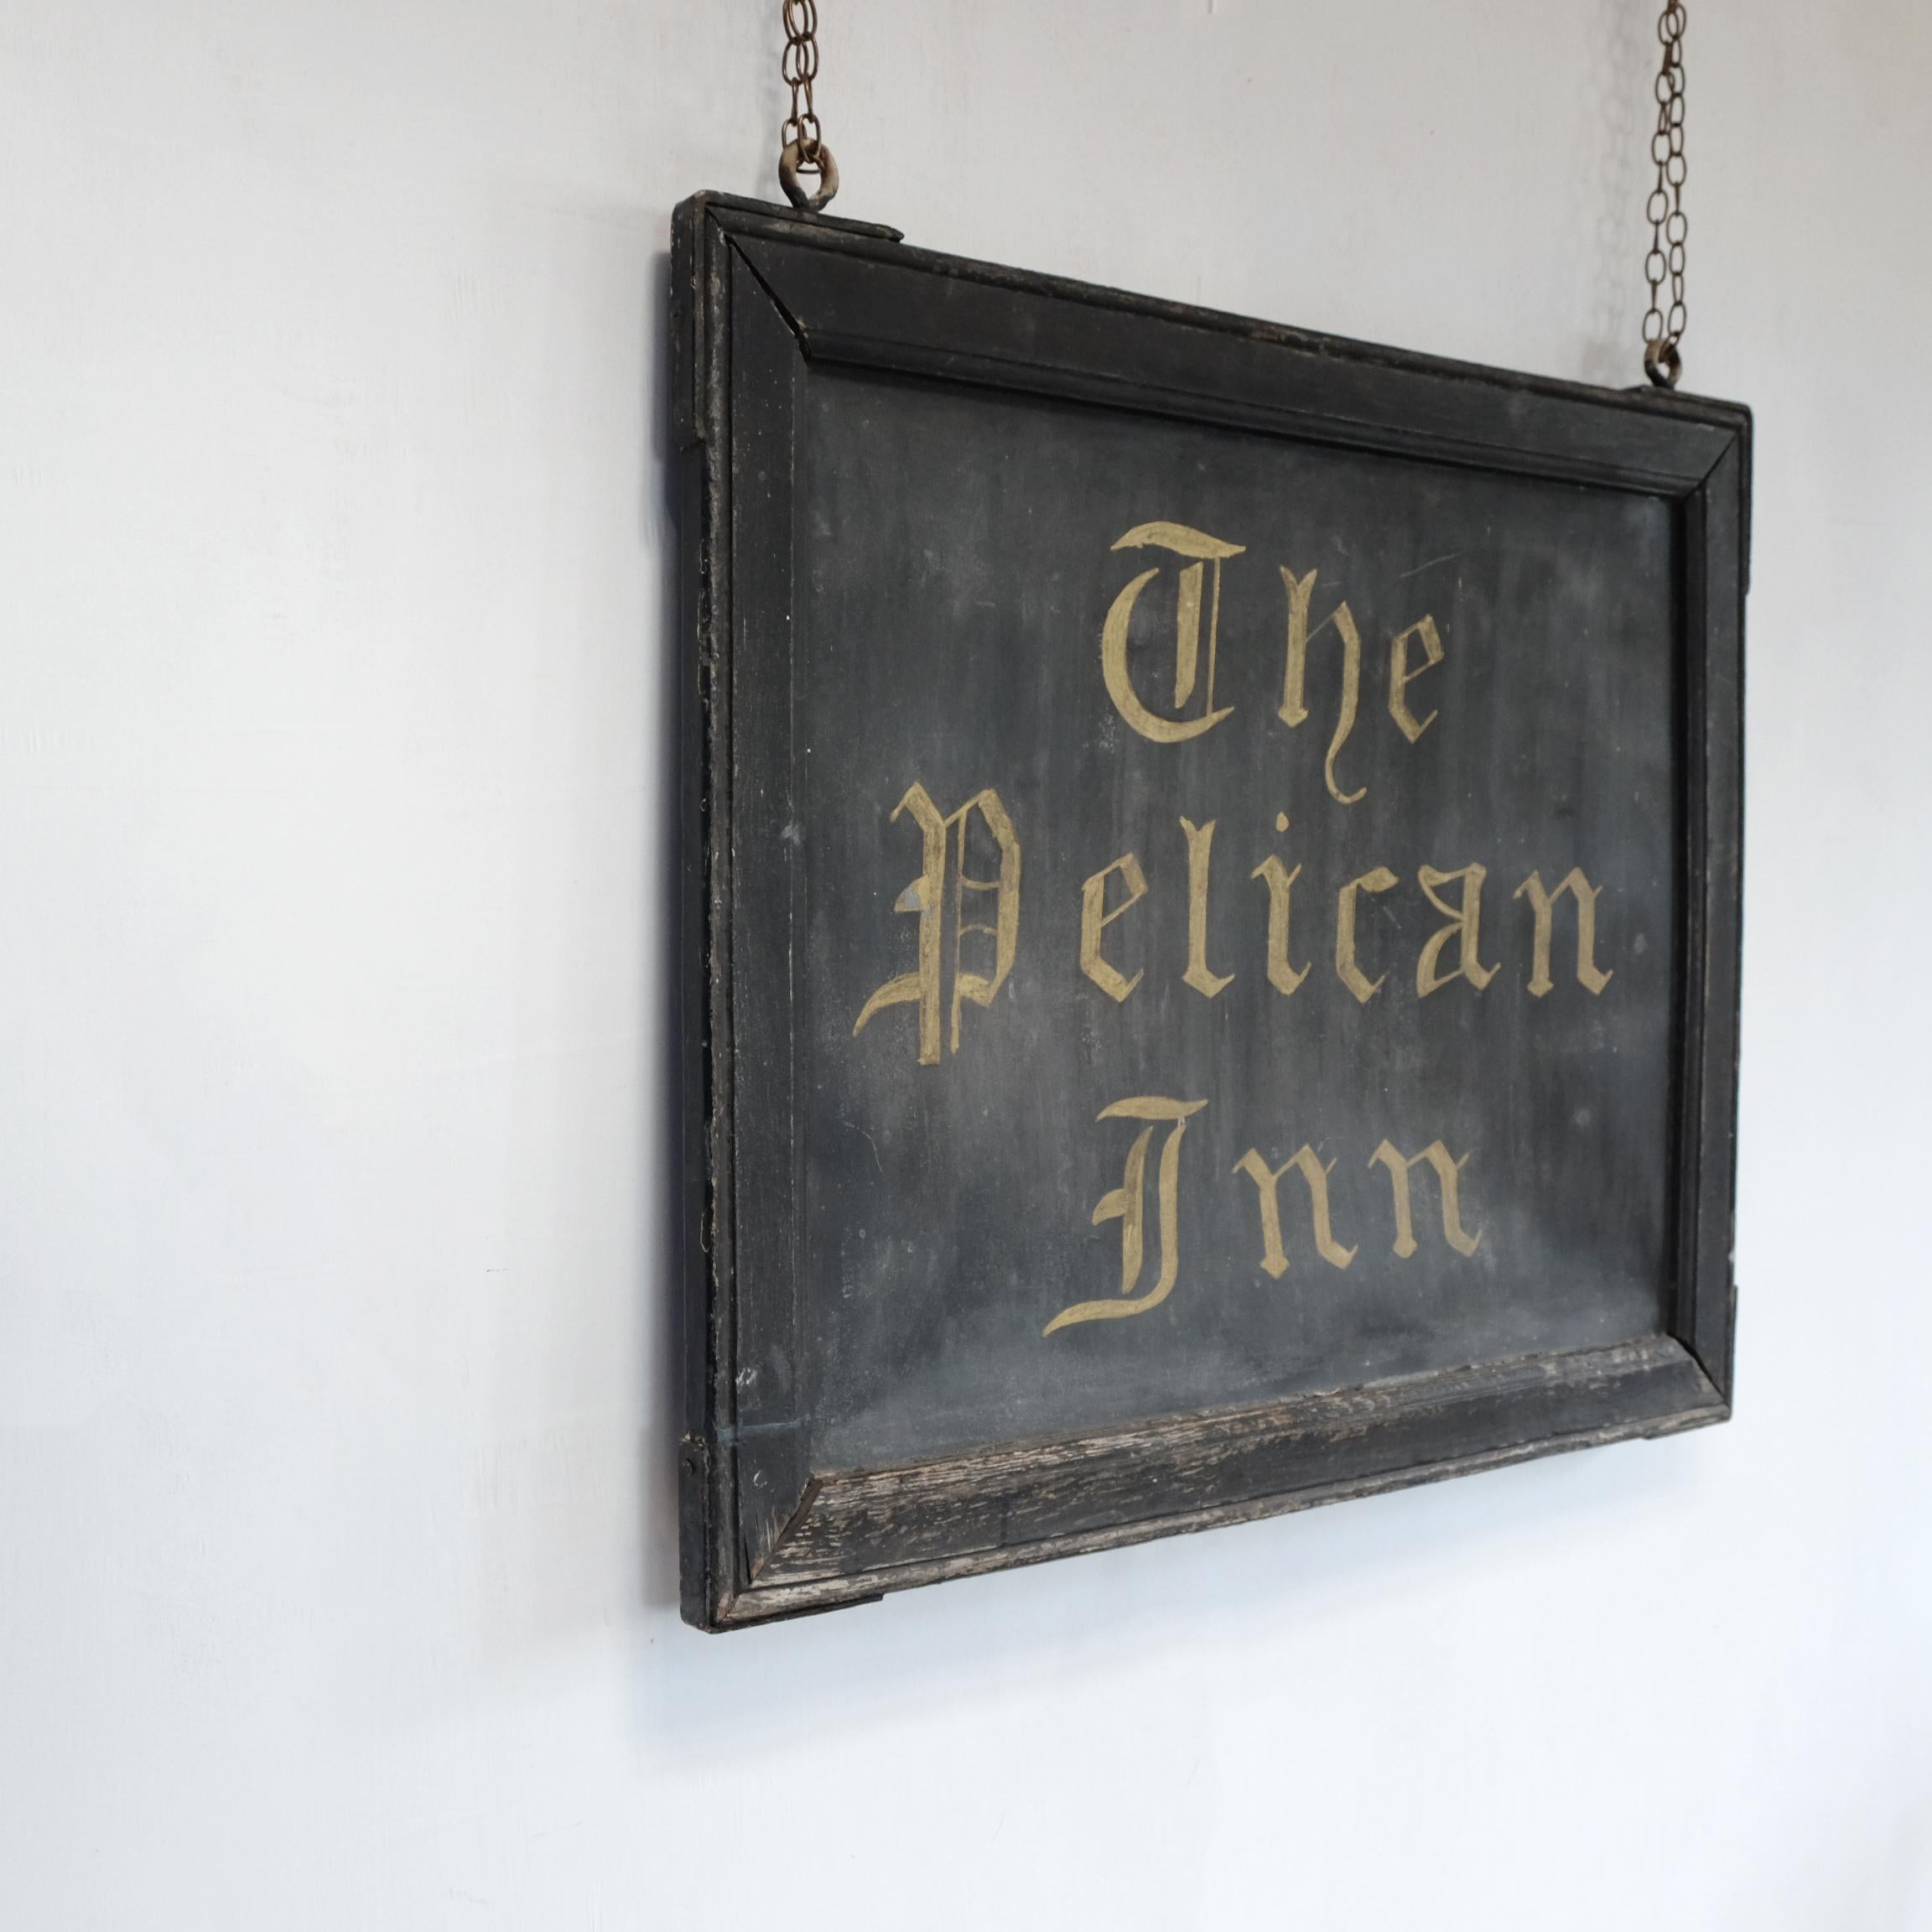 painted pelican inn